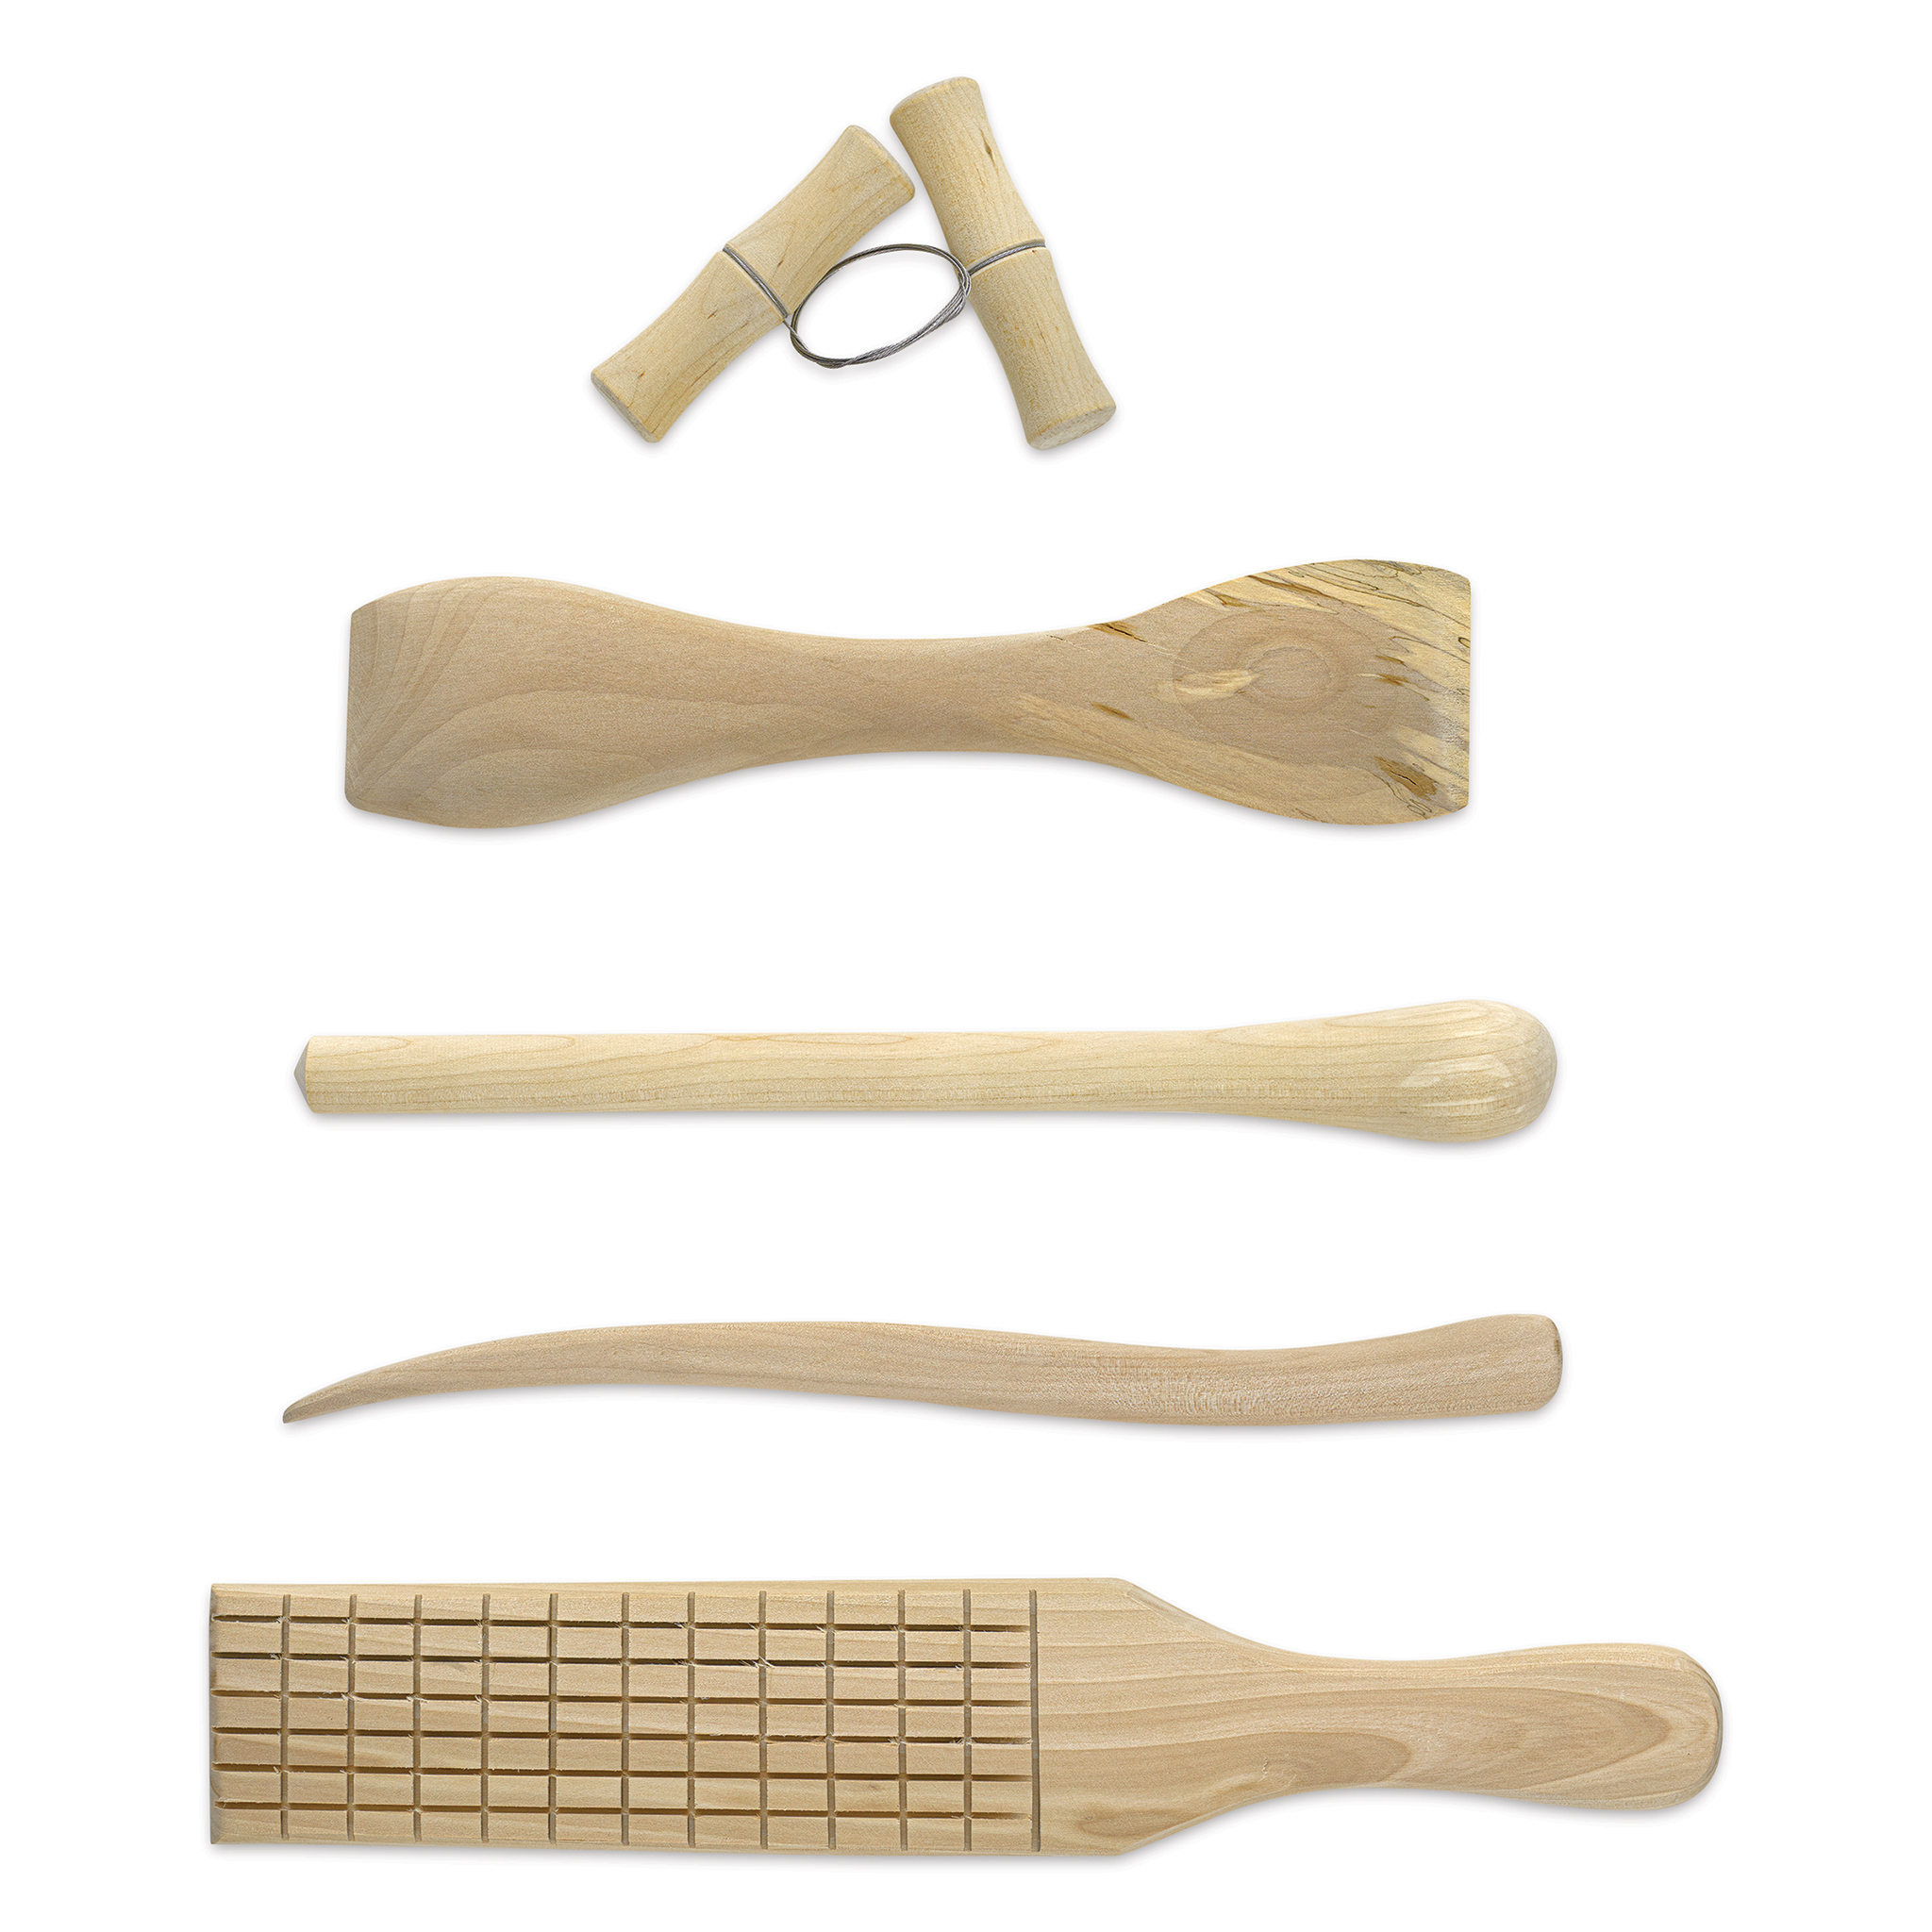 Tool Kit - Handbuilding Begin – BrickHouse Ceramic Art Center